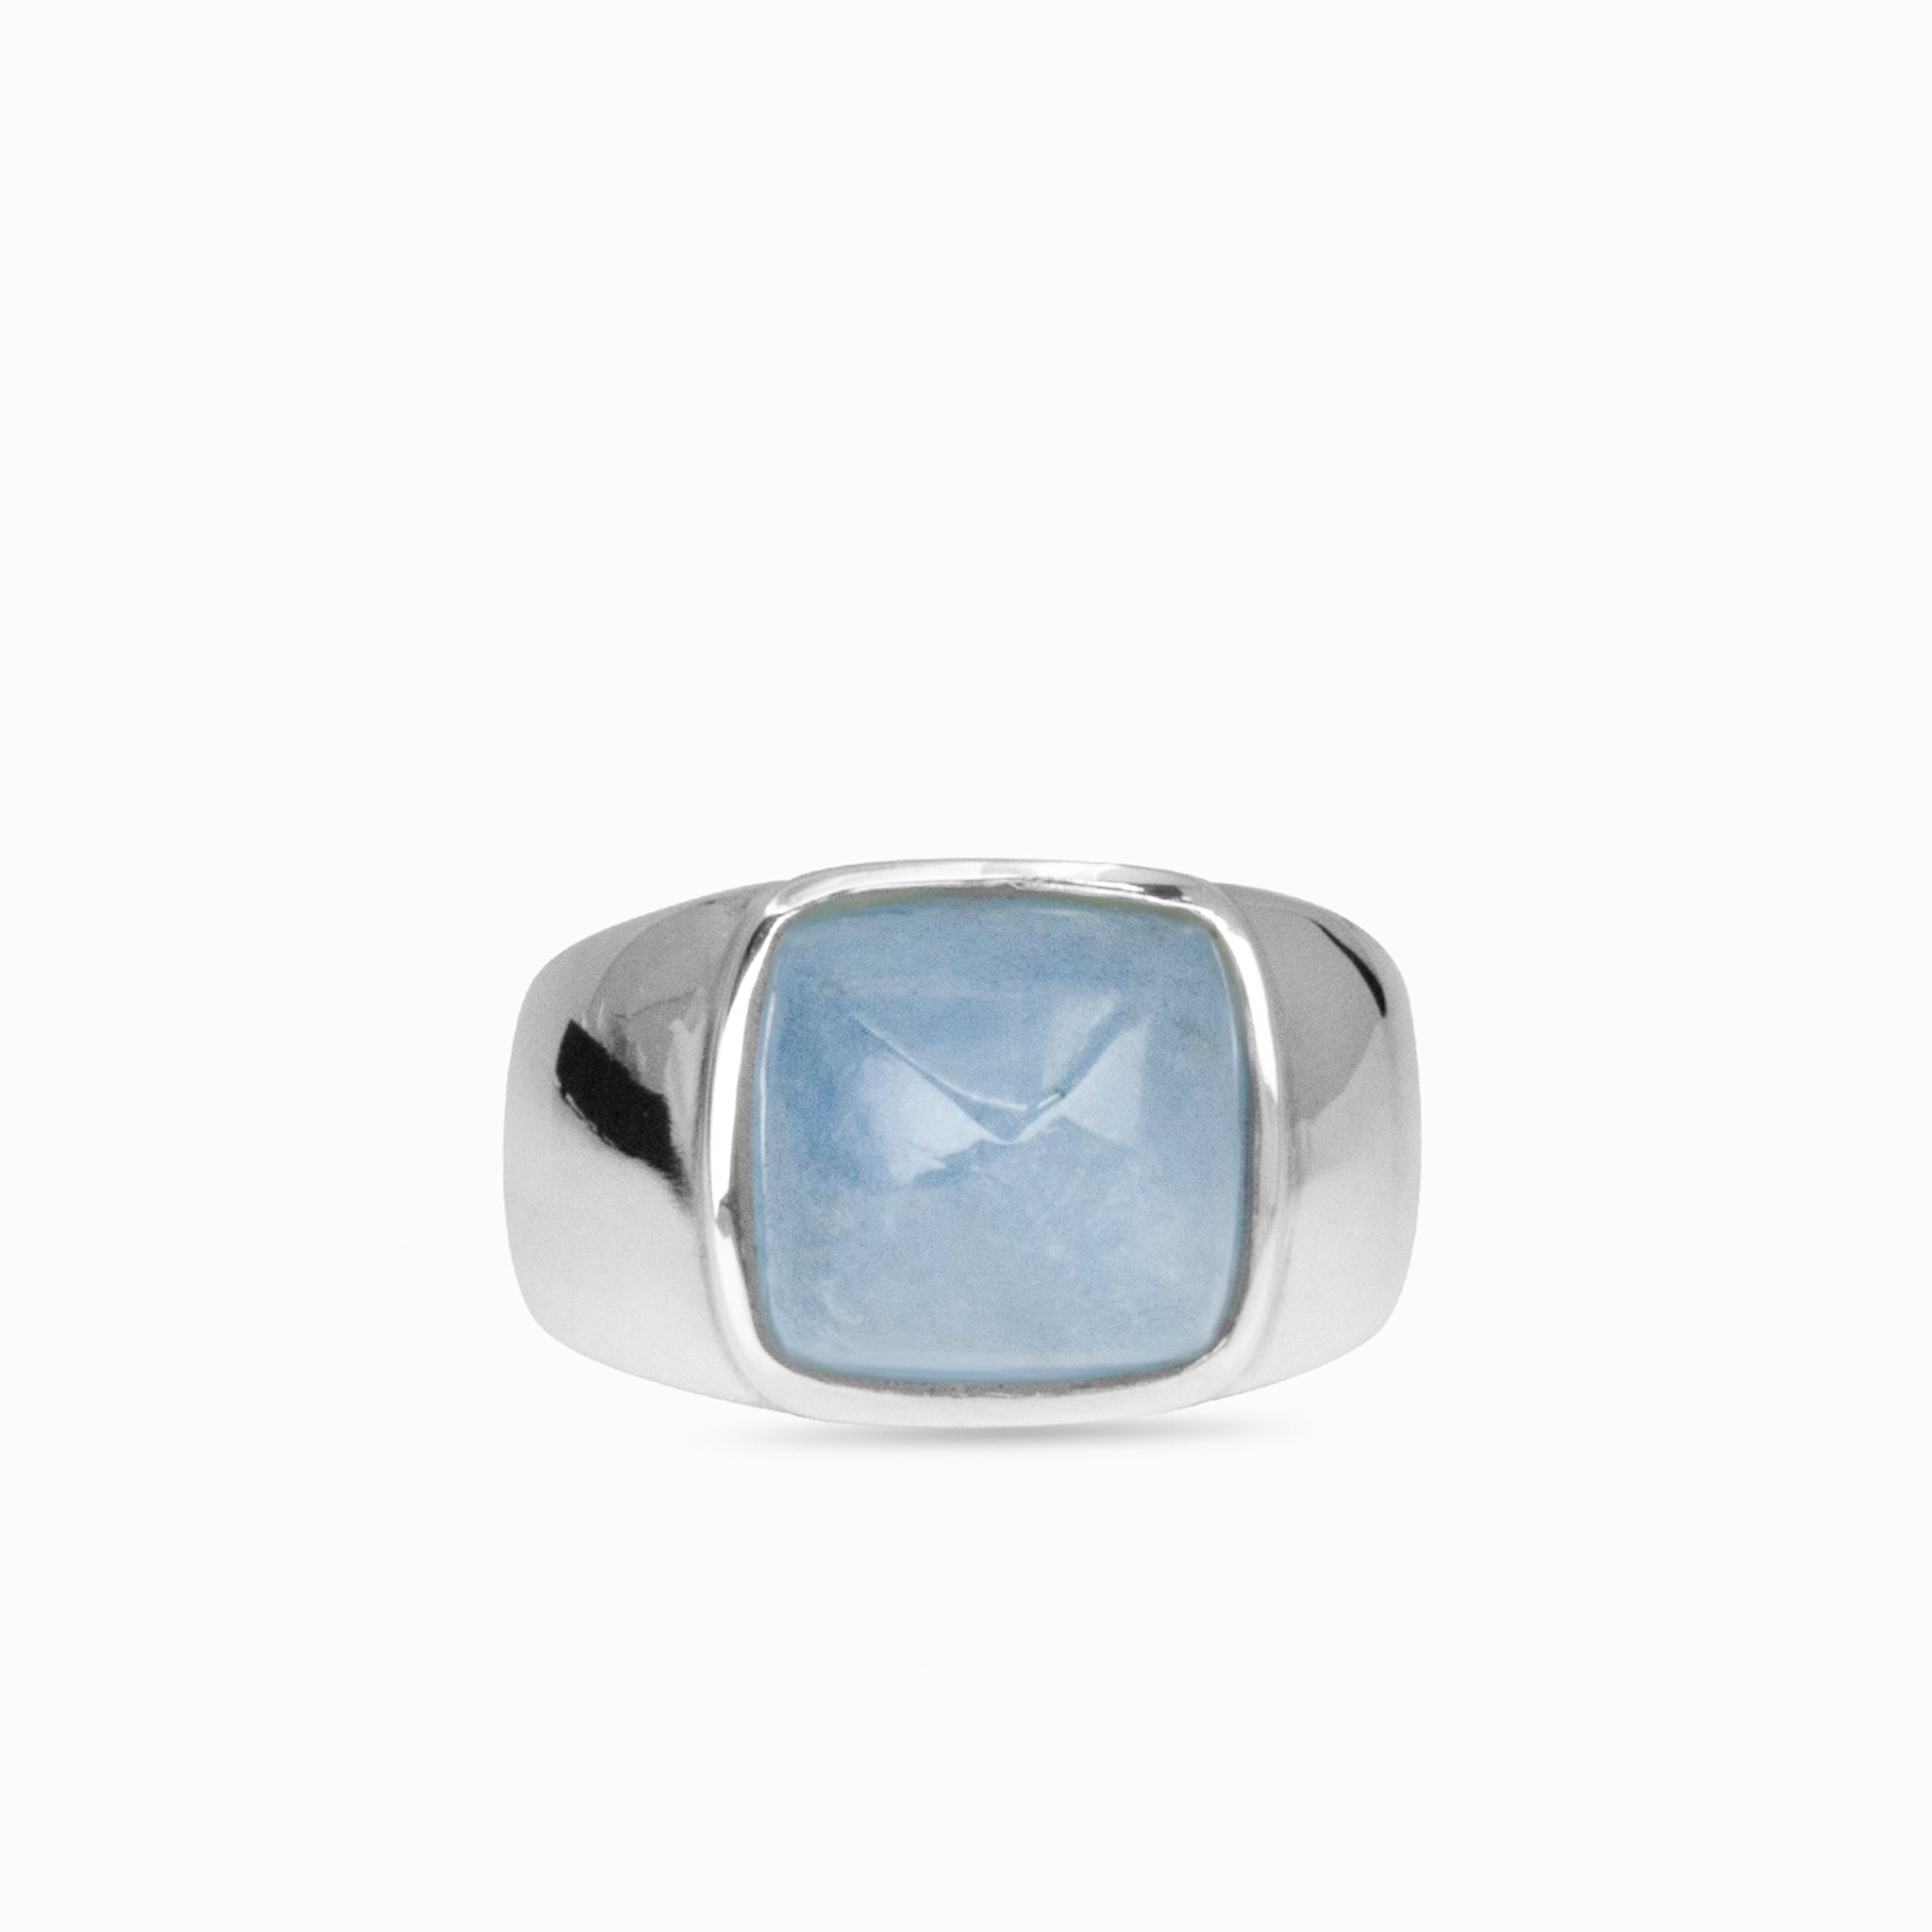 aquamarine ring